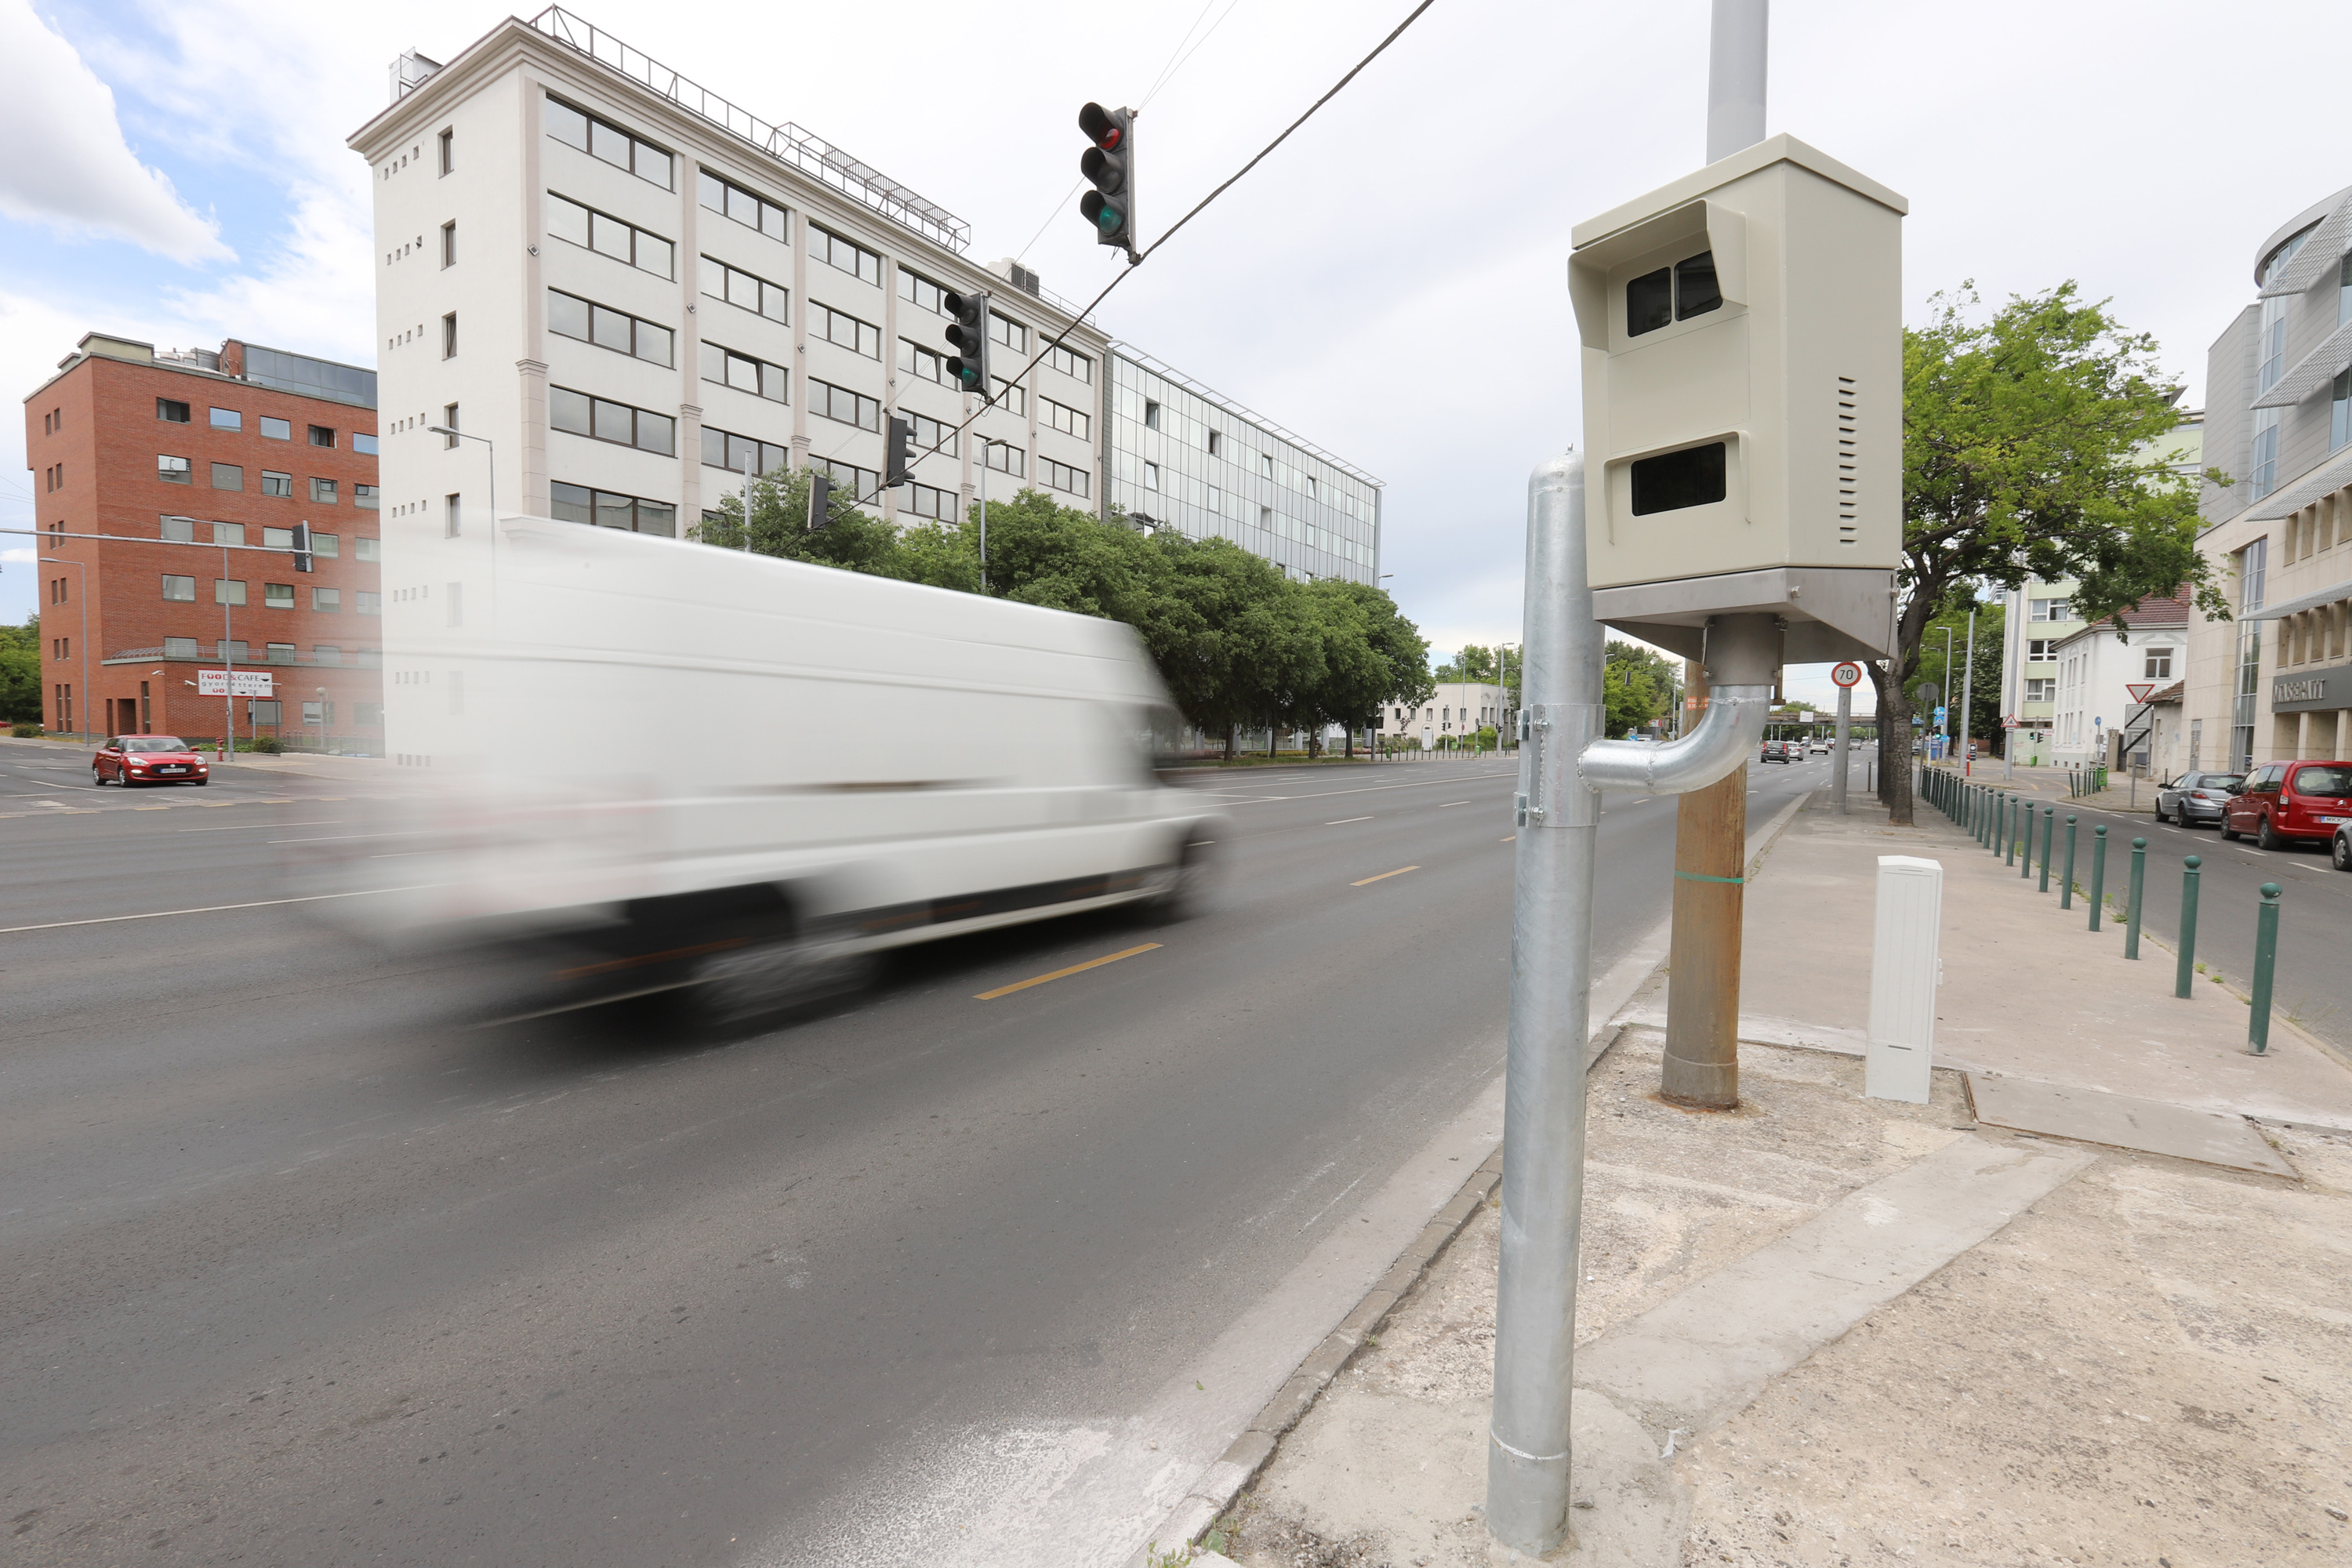 Fix sebességmérők Kolozsvár utcáin?